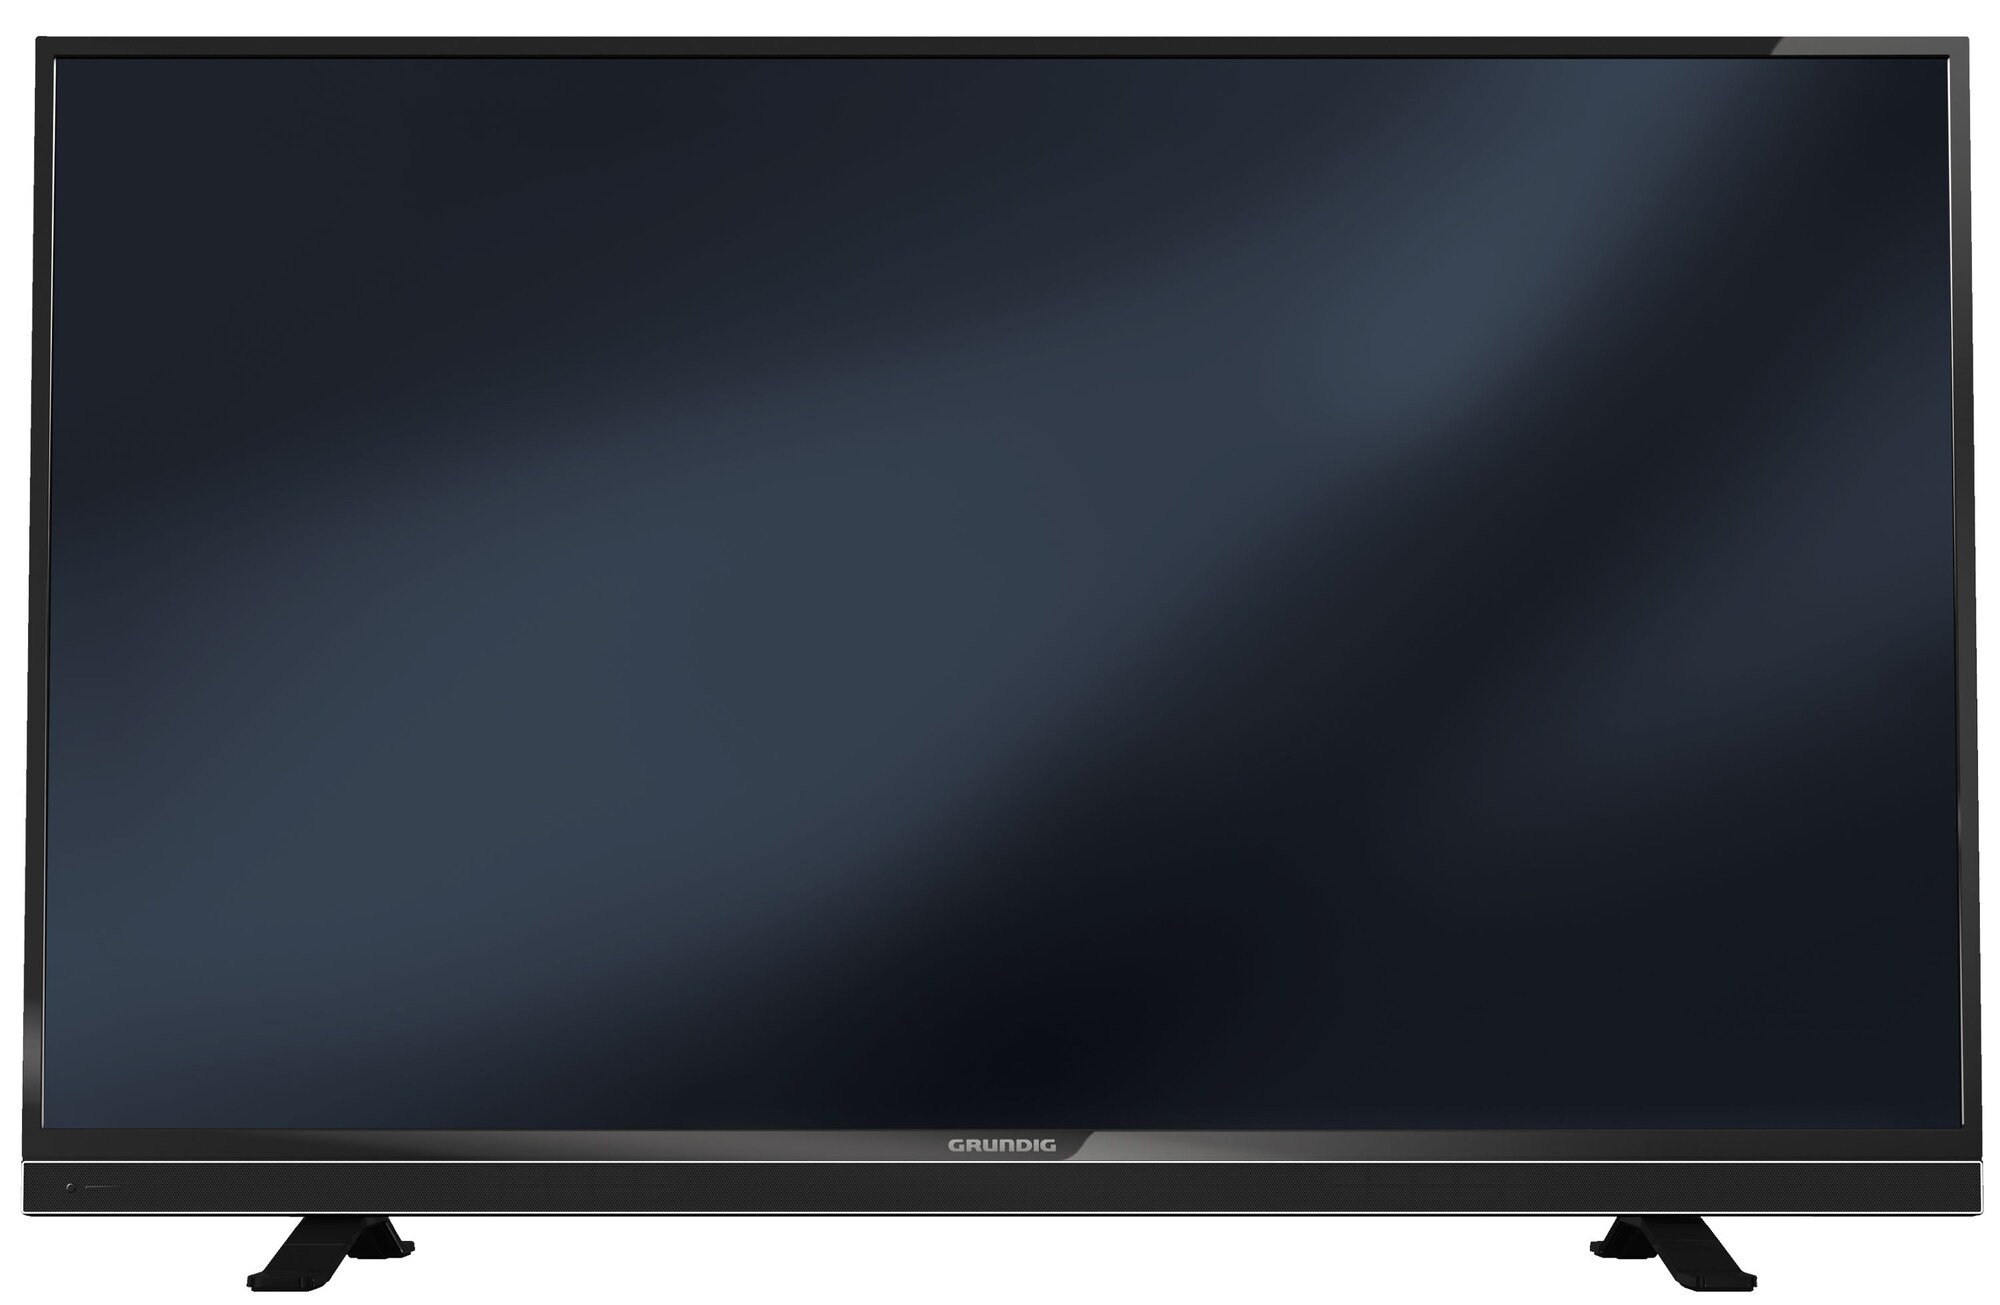 bidragyder de sælge Grundig 55" LED Smart TV u/tuner 55 VLE 8500 BO - Elkjøp